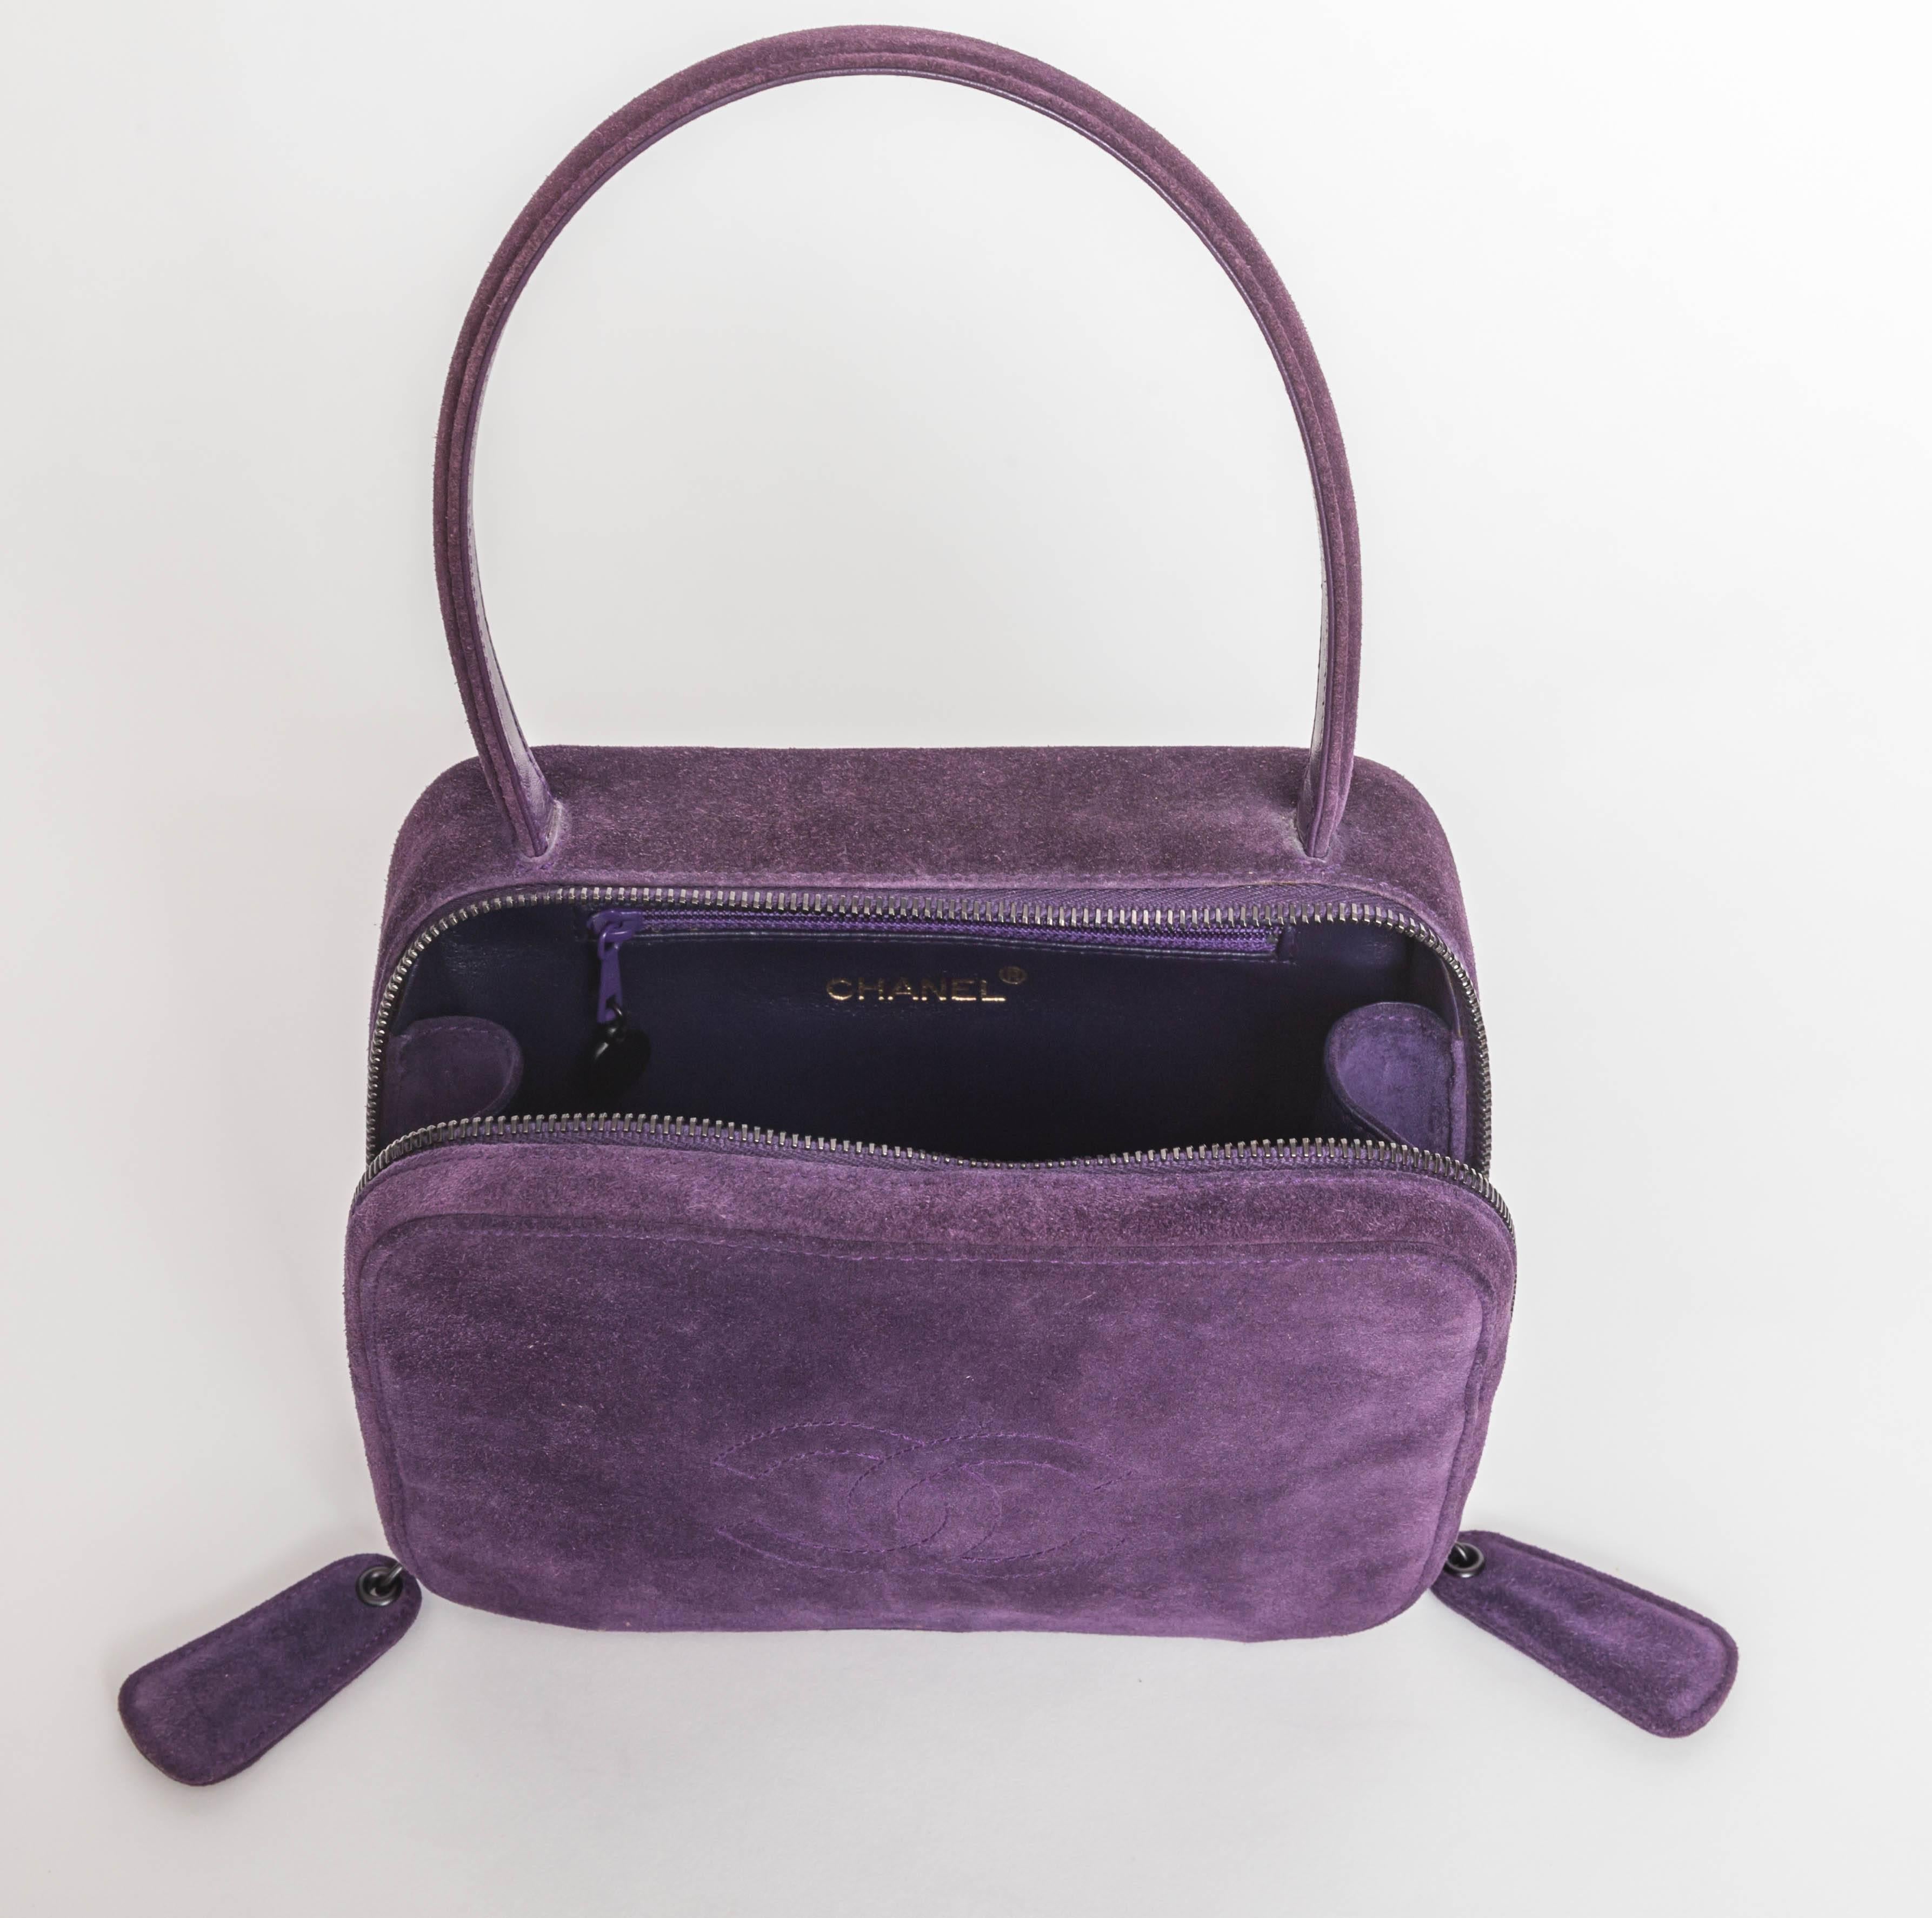 Vintage Purple Suede Chanel Bag - 1997 - 1999 2